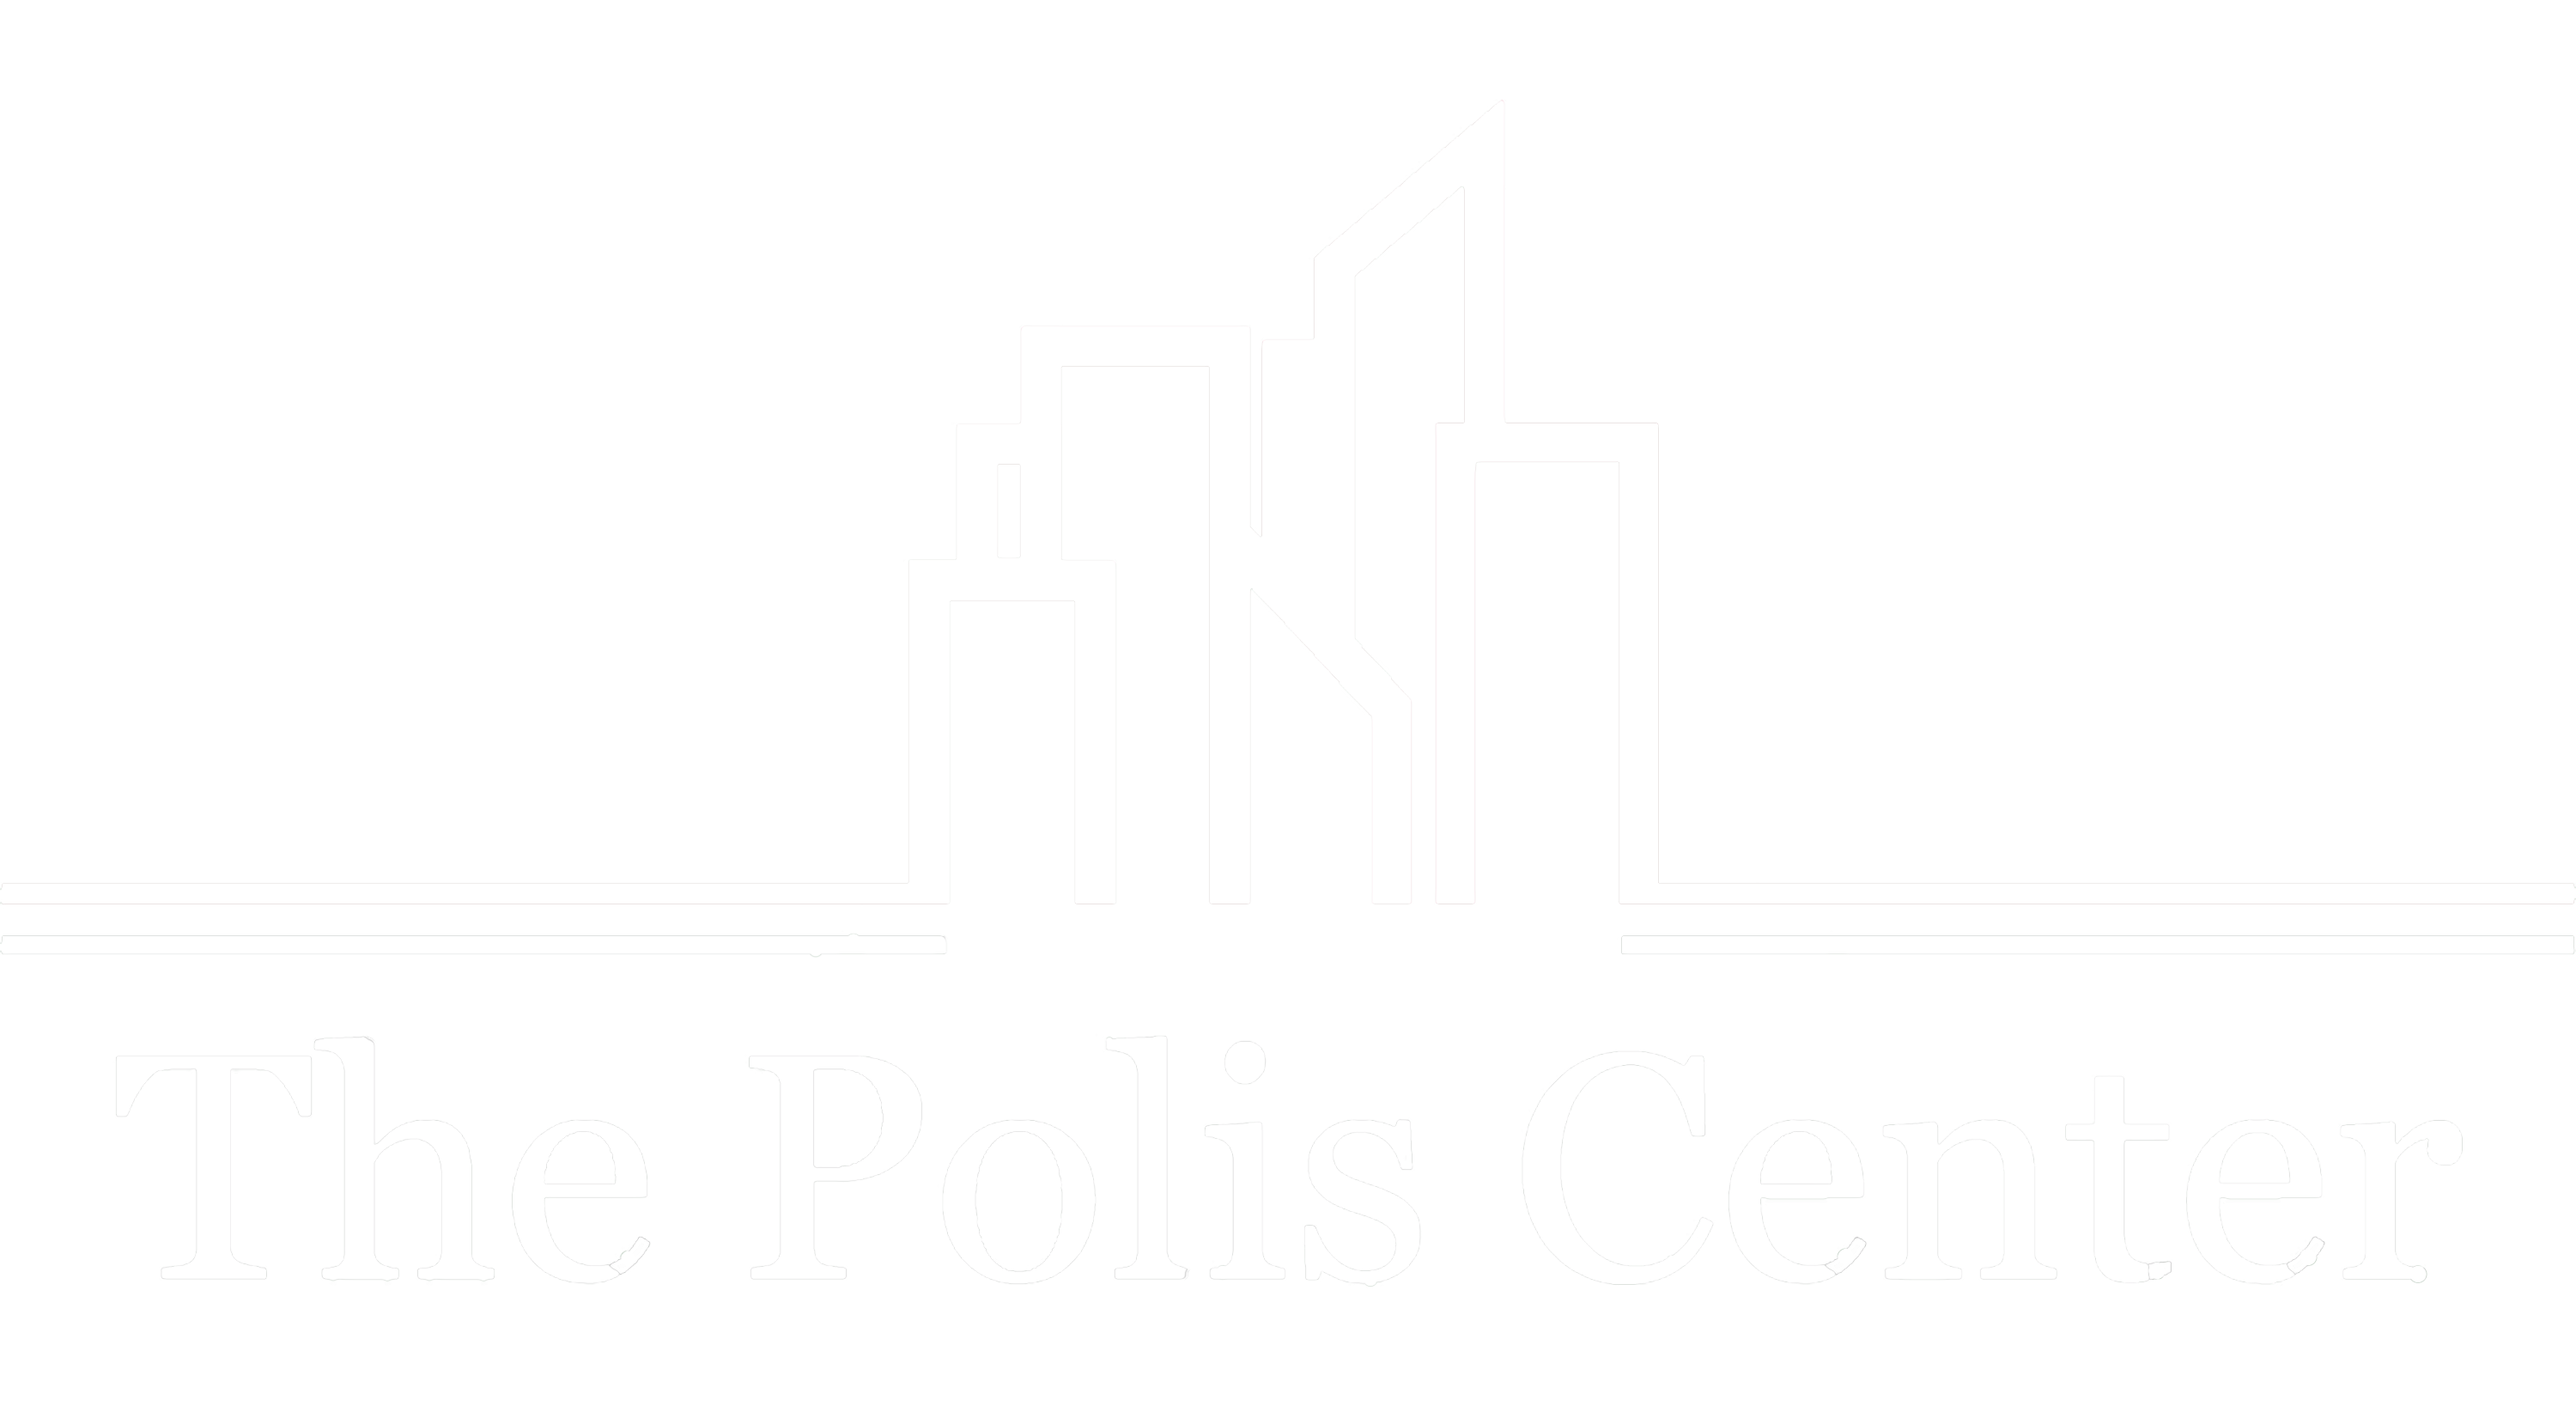 POLIS Logo